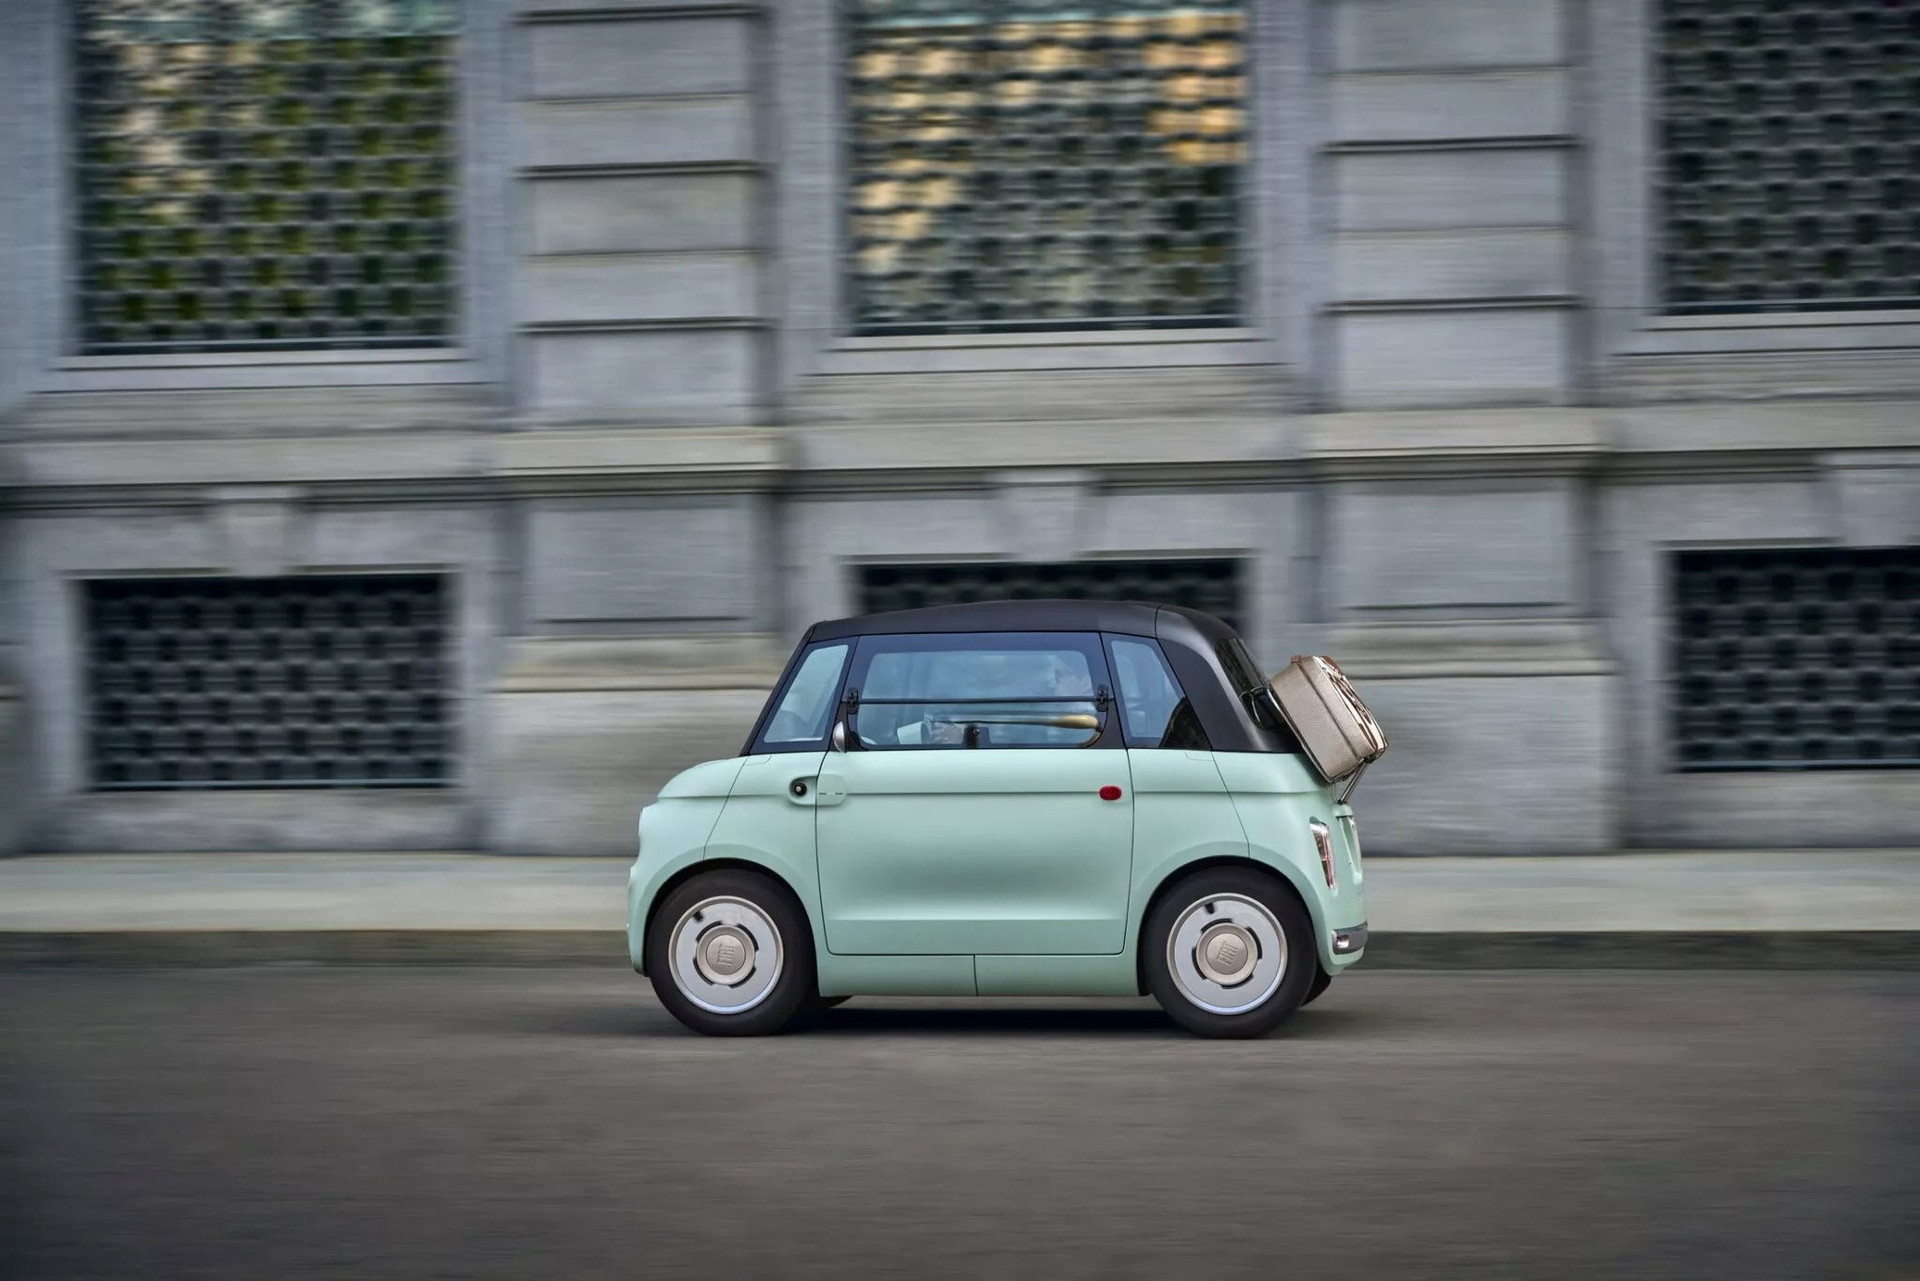 Đây có phải đỉnh cao của ô tô điện mini dạo phố: Fiat Topolino tầm hoạt động 75 km, trẻ 14 tuổi cũng lái được - Ảnh 3.